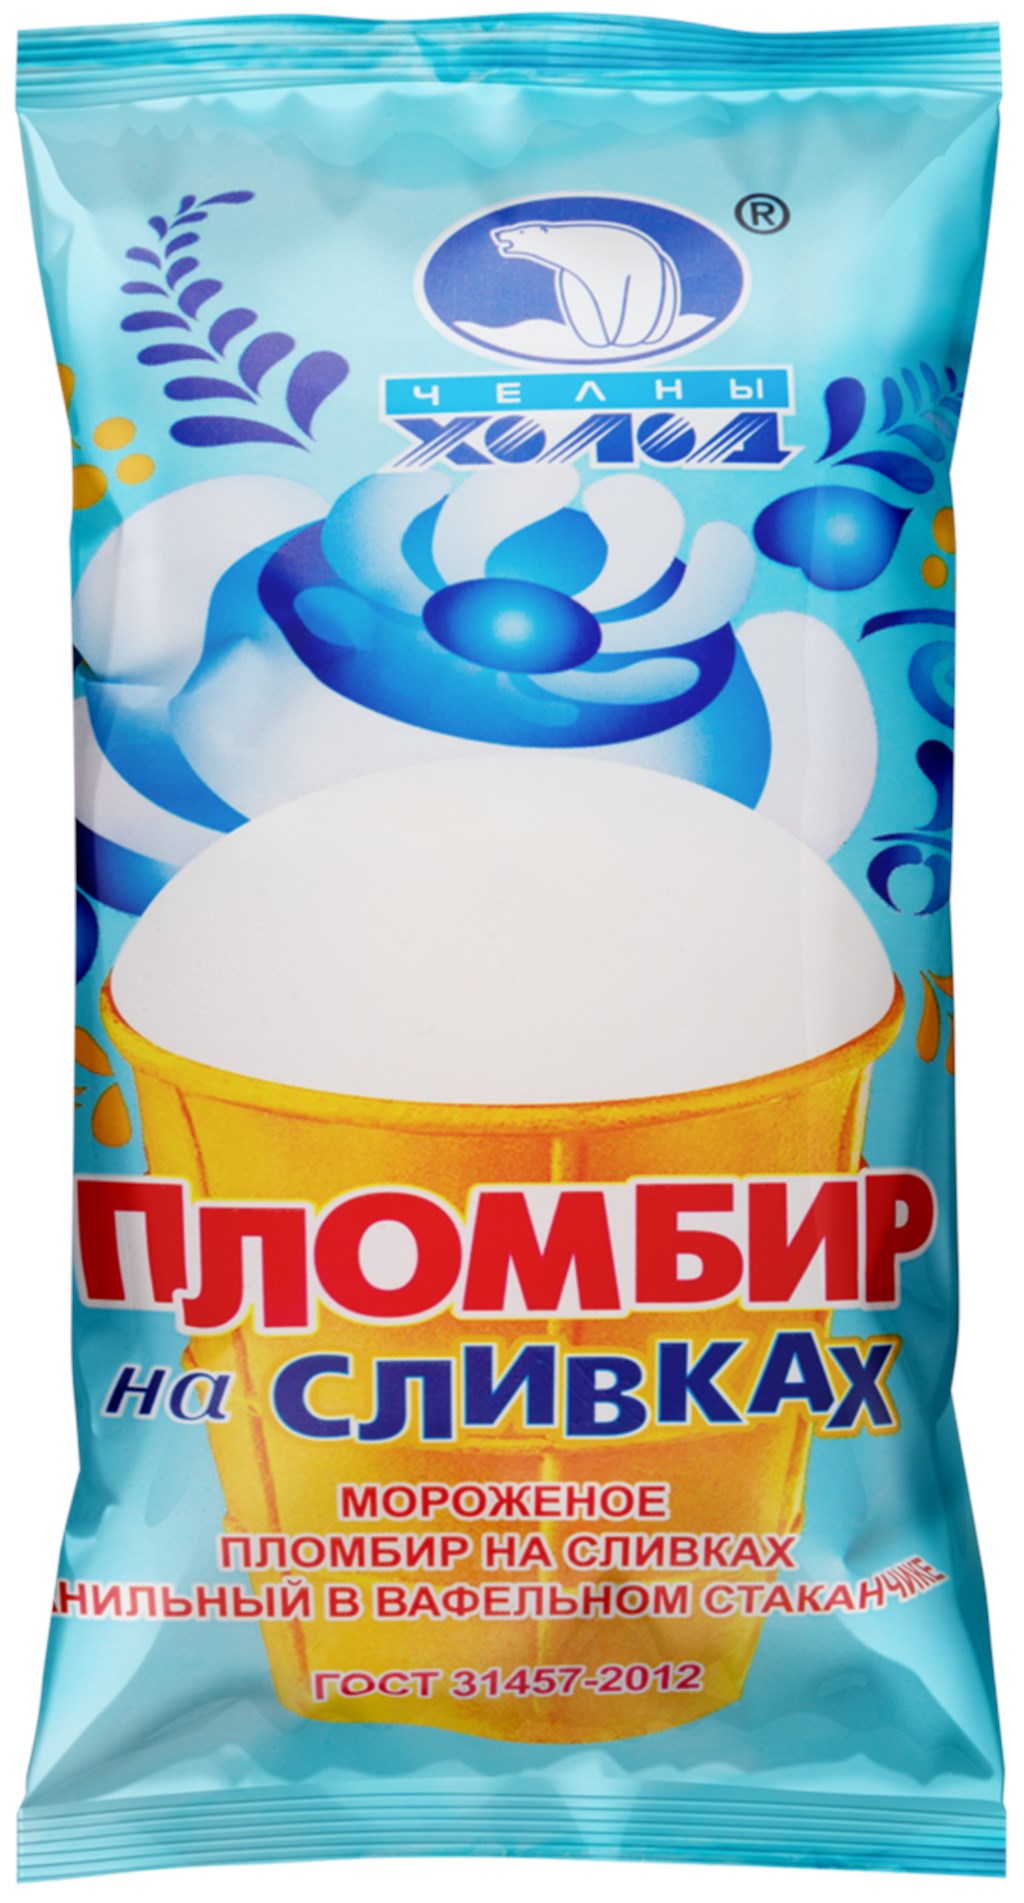 Мороженое Пломбир на сливках в вафельном стаканчике - Санкт-Петербург 